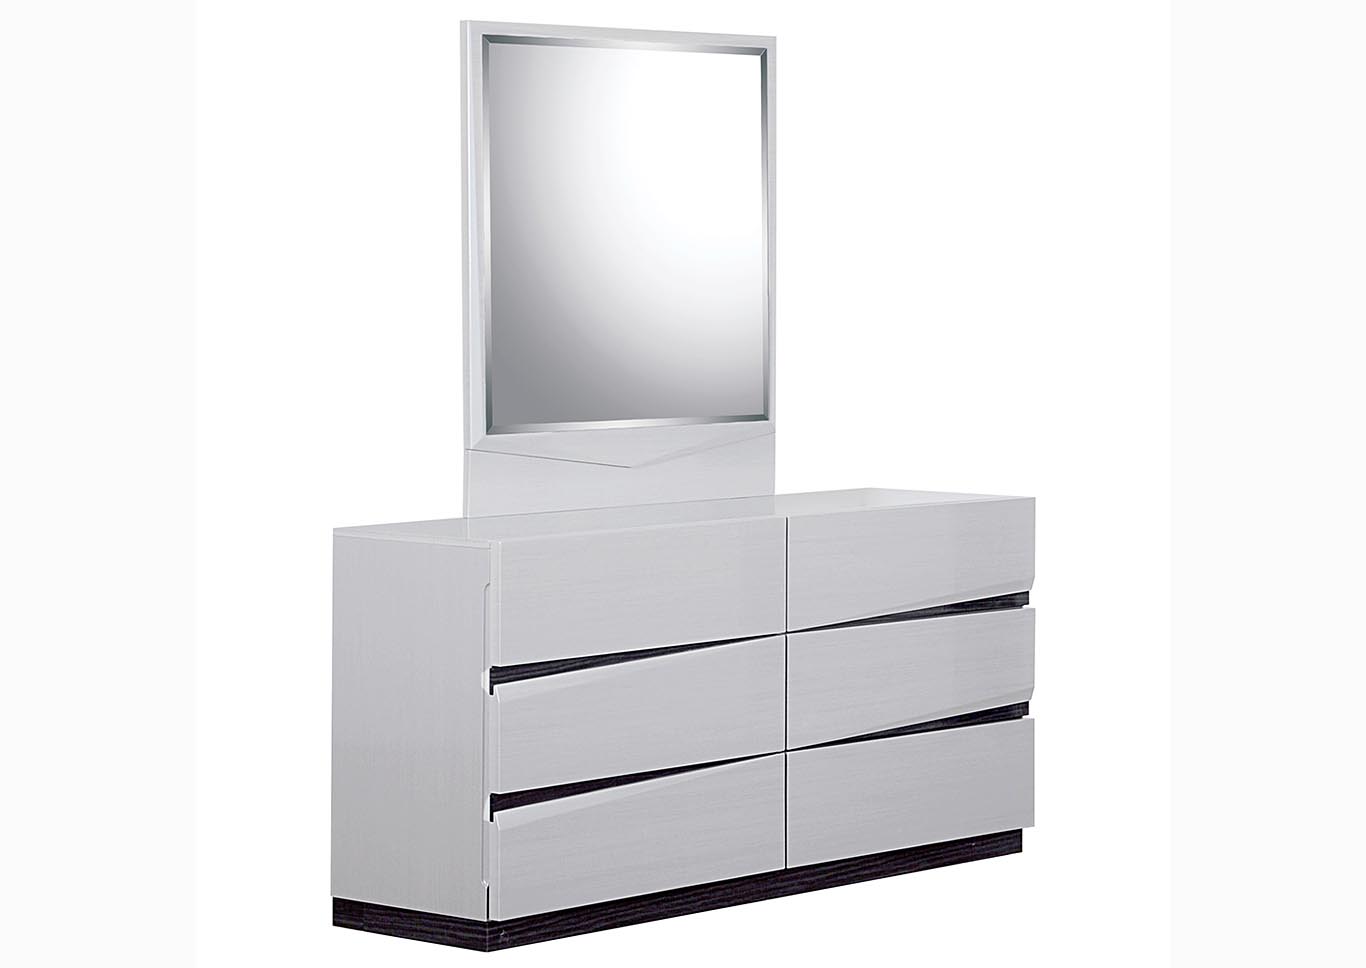 Max Five Star Furniture Scarlett Silverline Zebra Grey Dresser